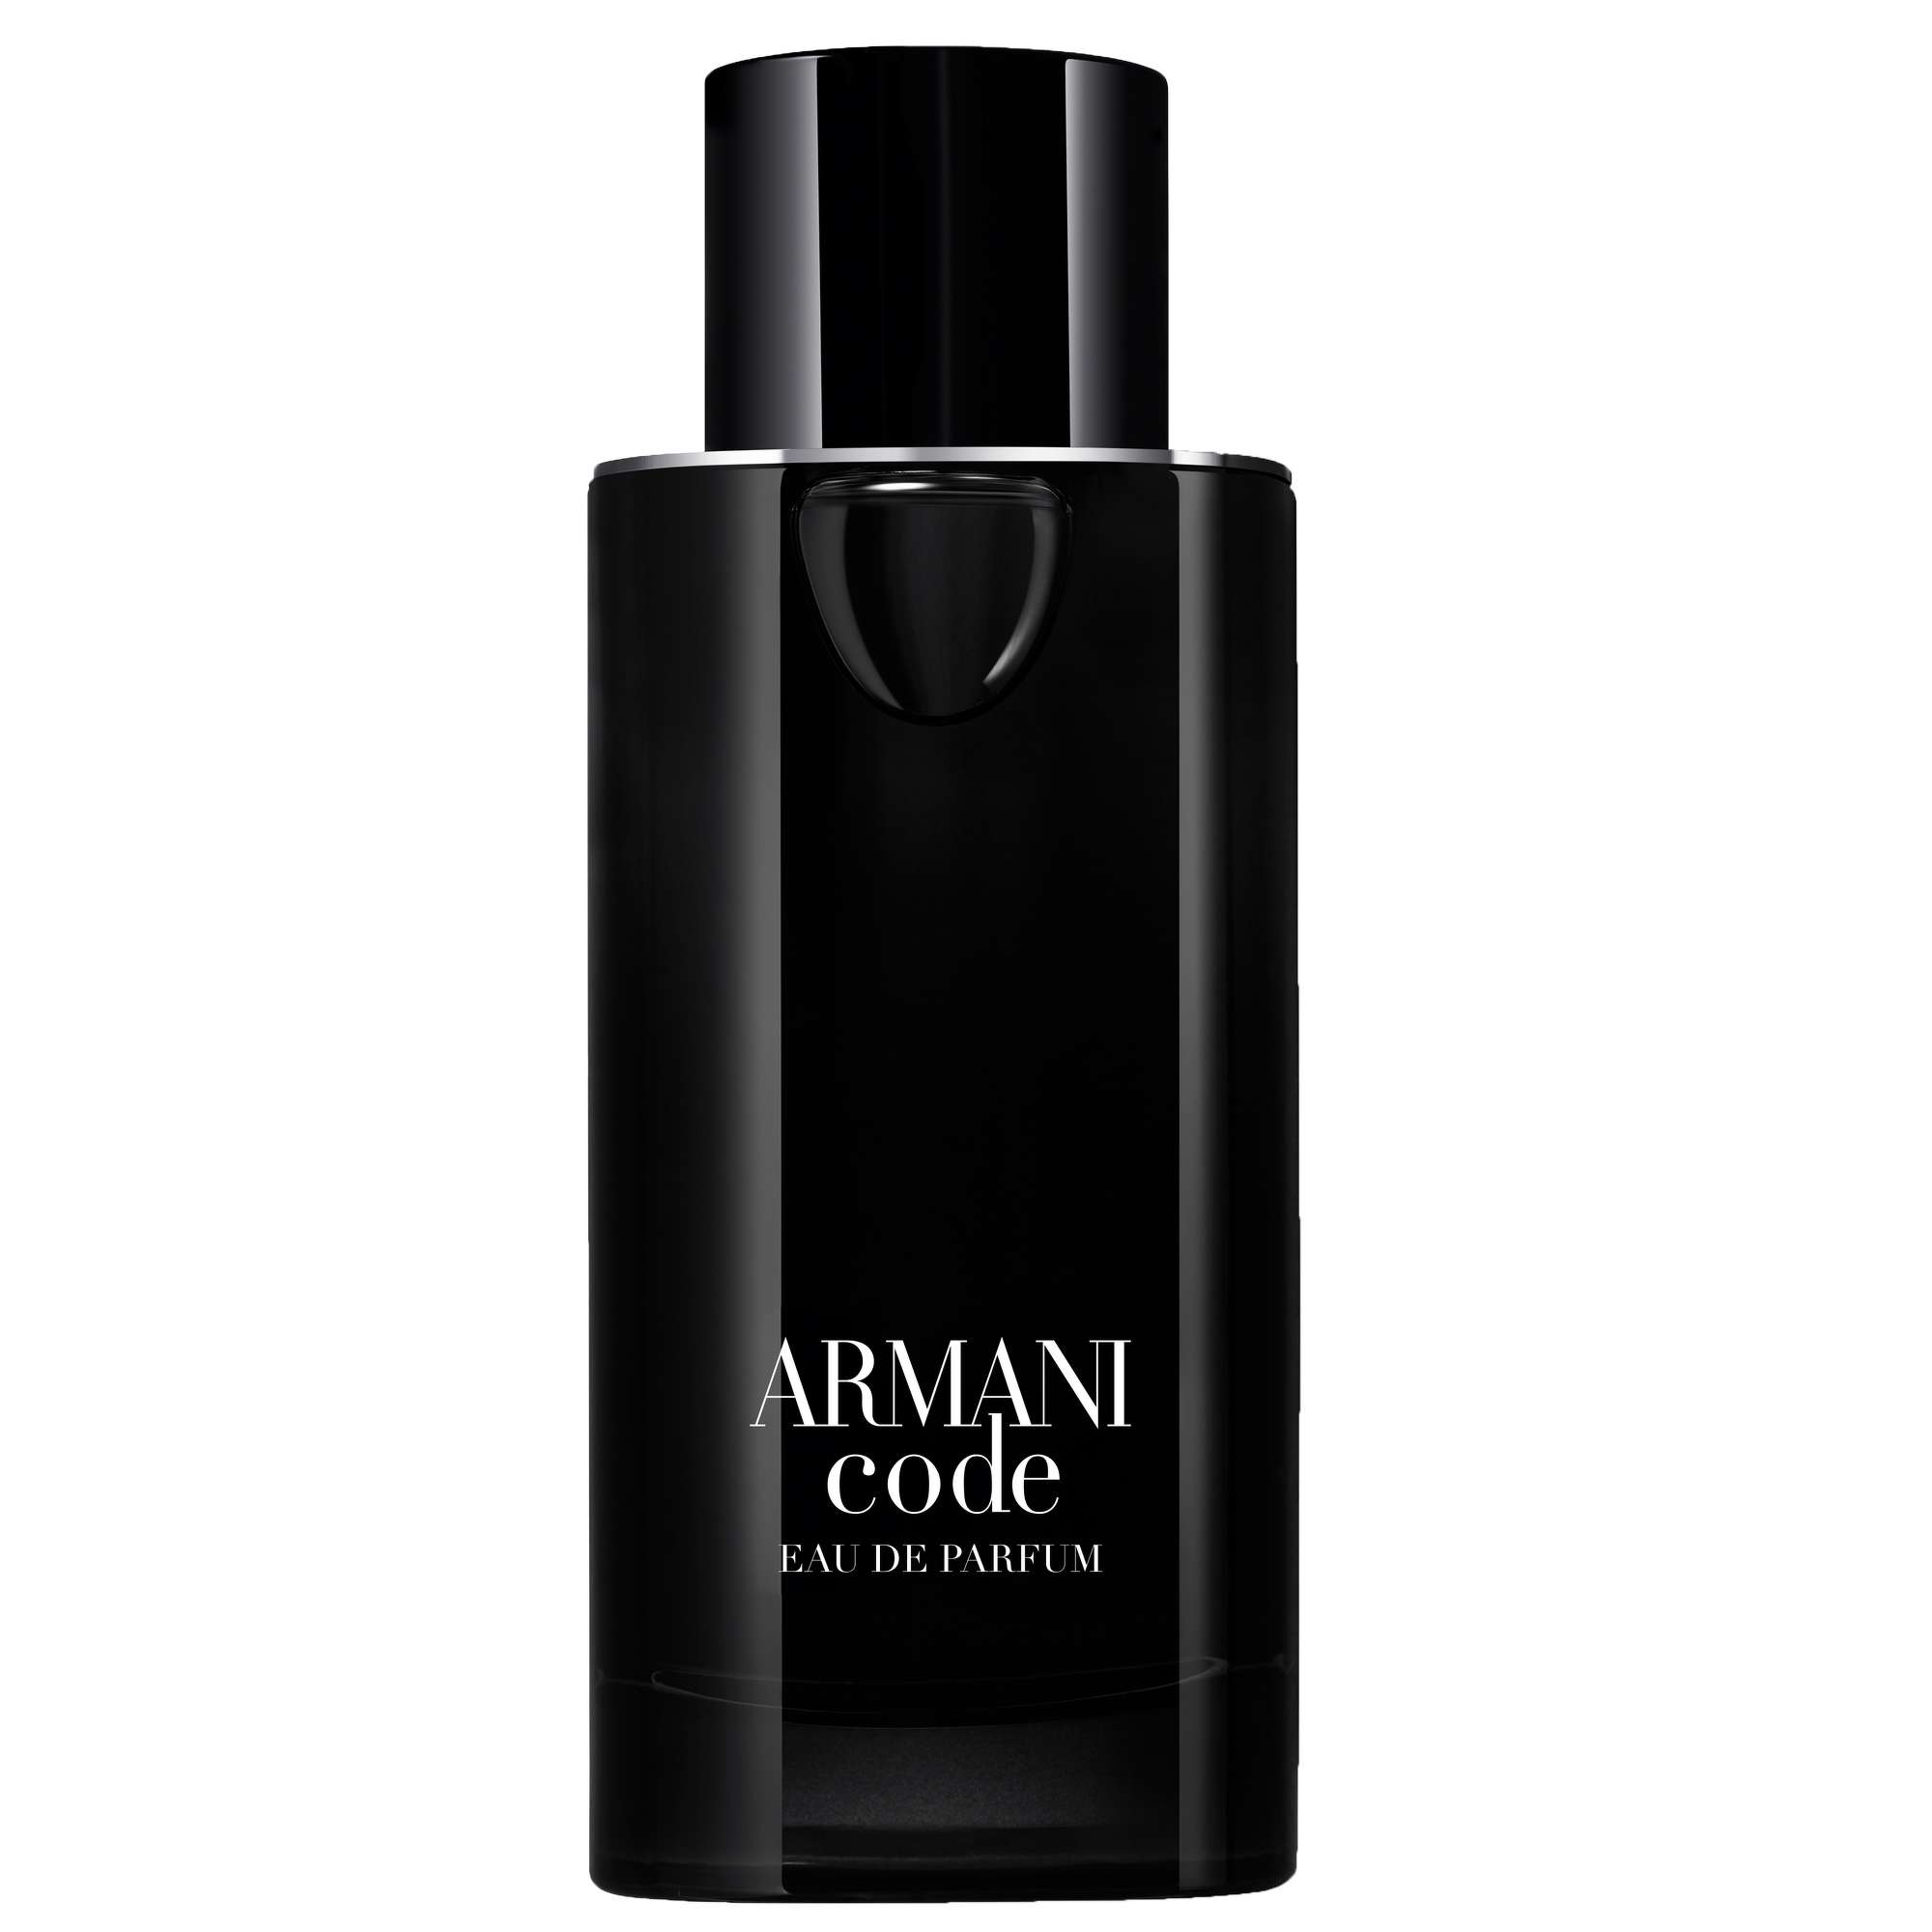 Image of Armani Code Eau de Parfum Pour Homme Eau de Parfum Spray 125ml